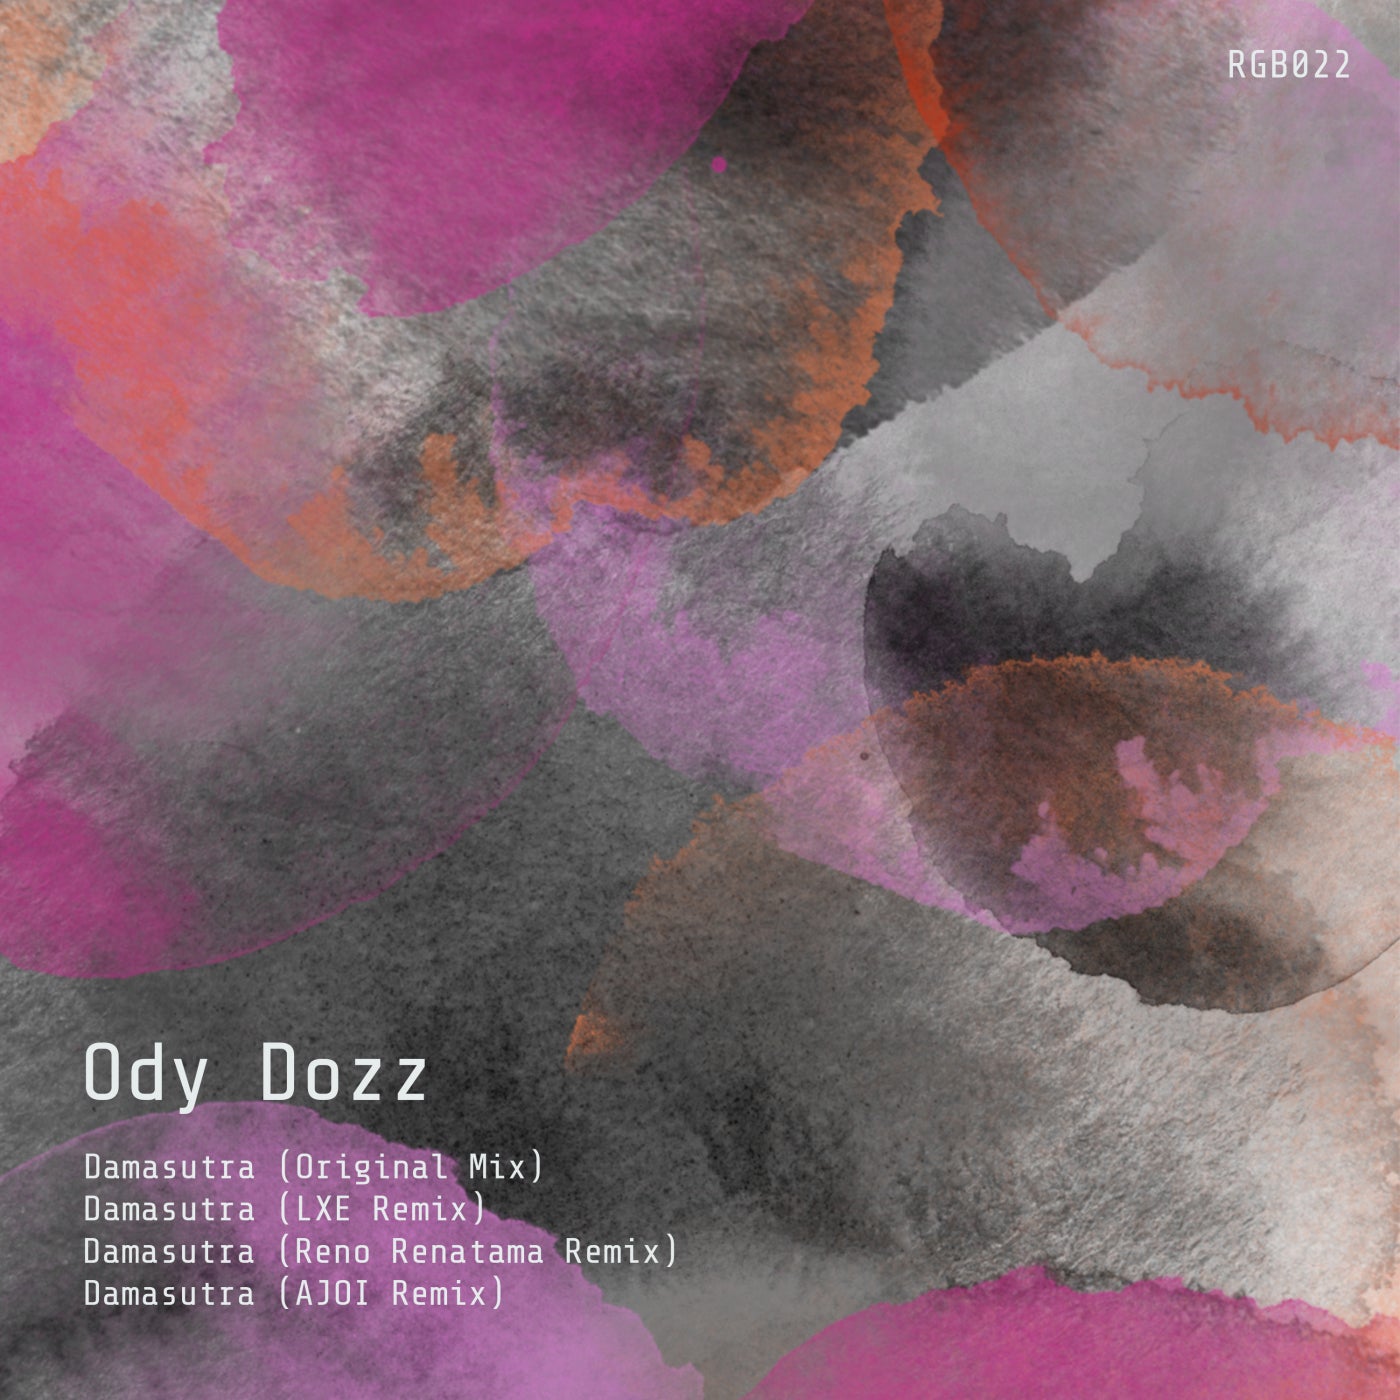 Ody dozz – Damasutra [RGB022]